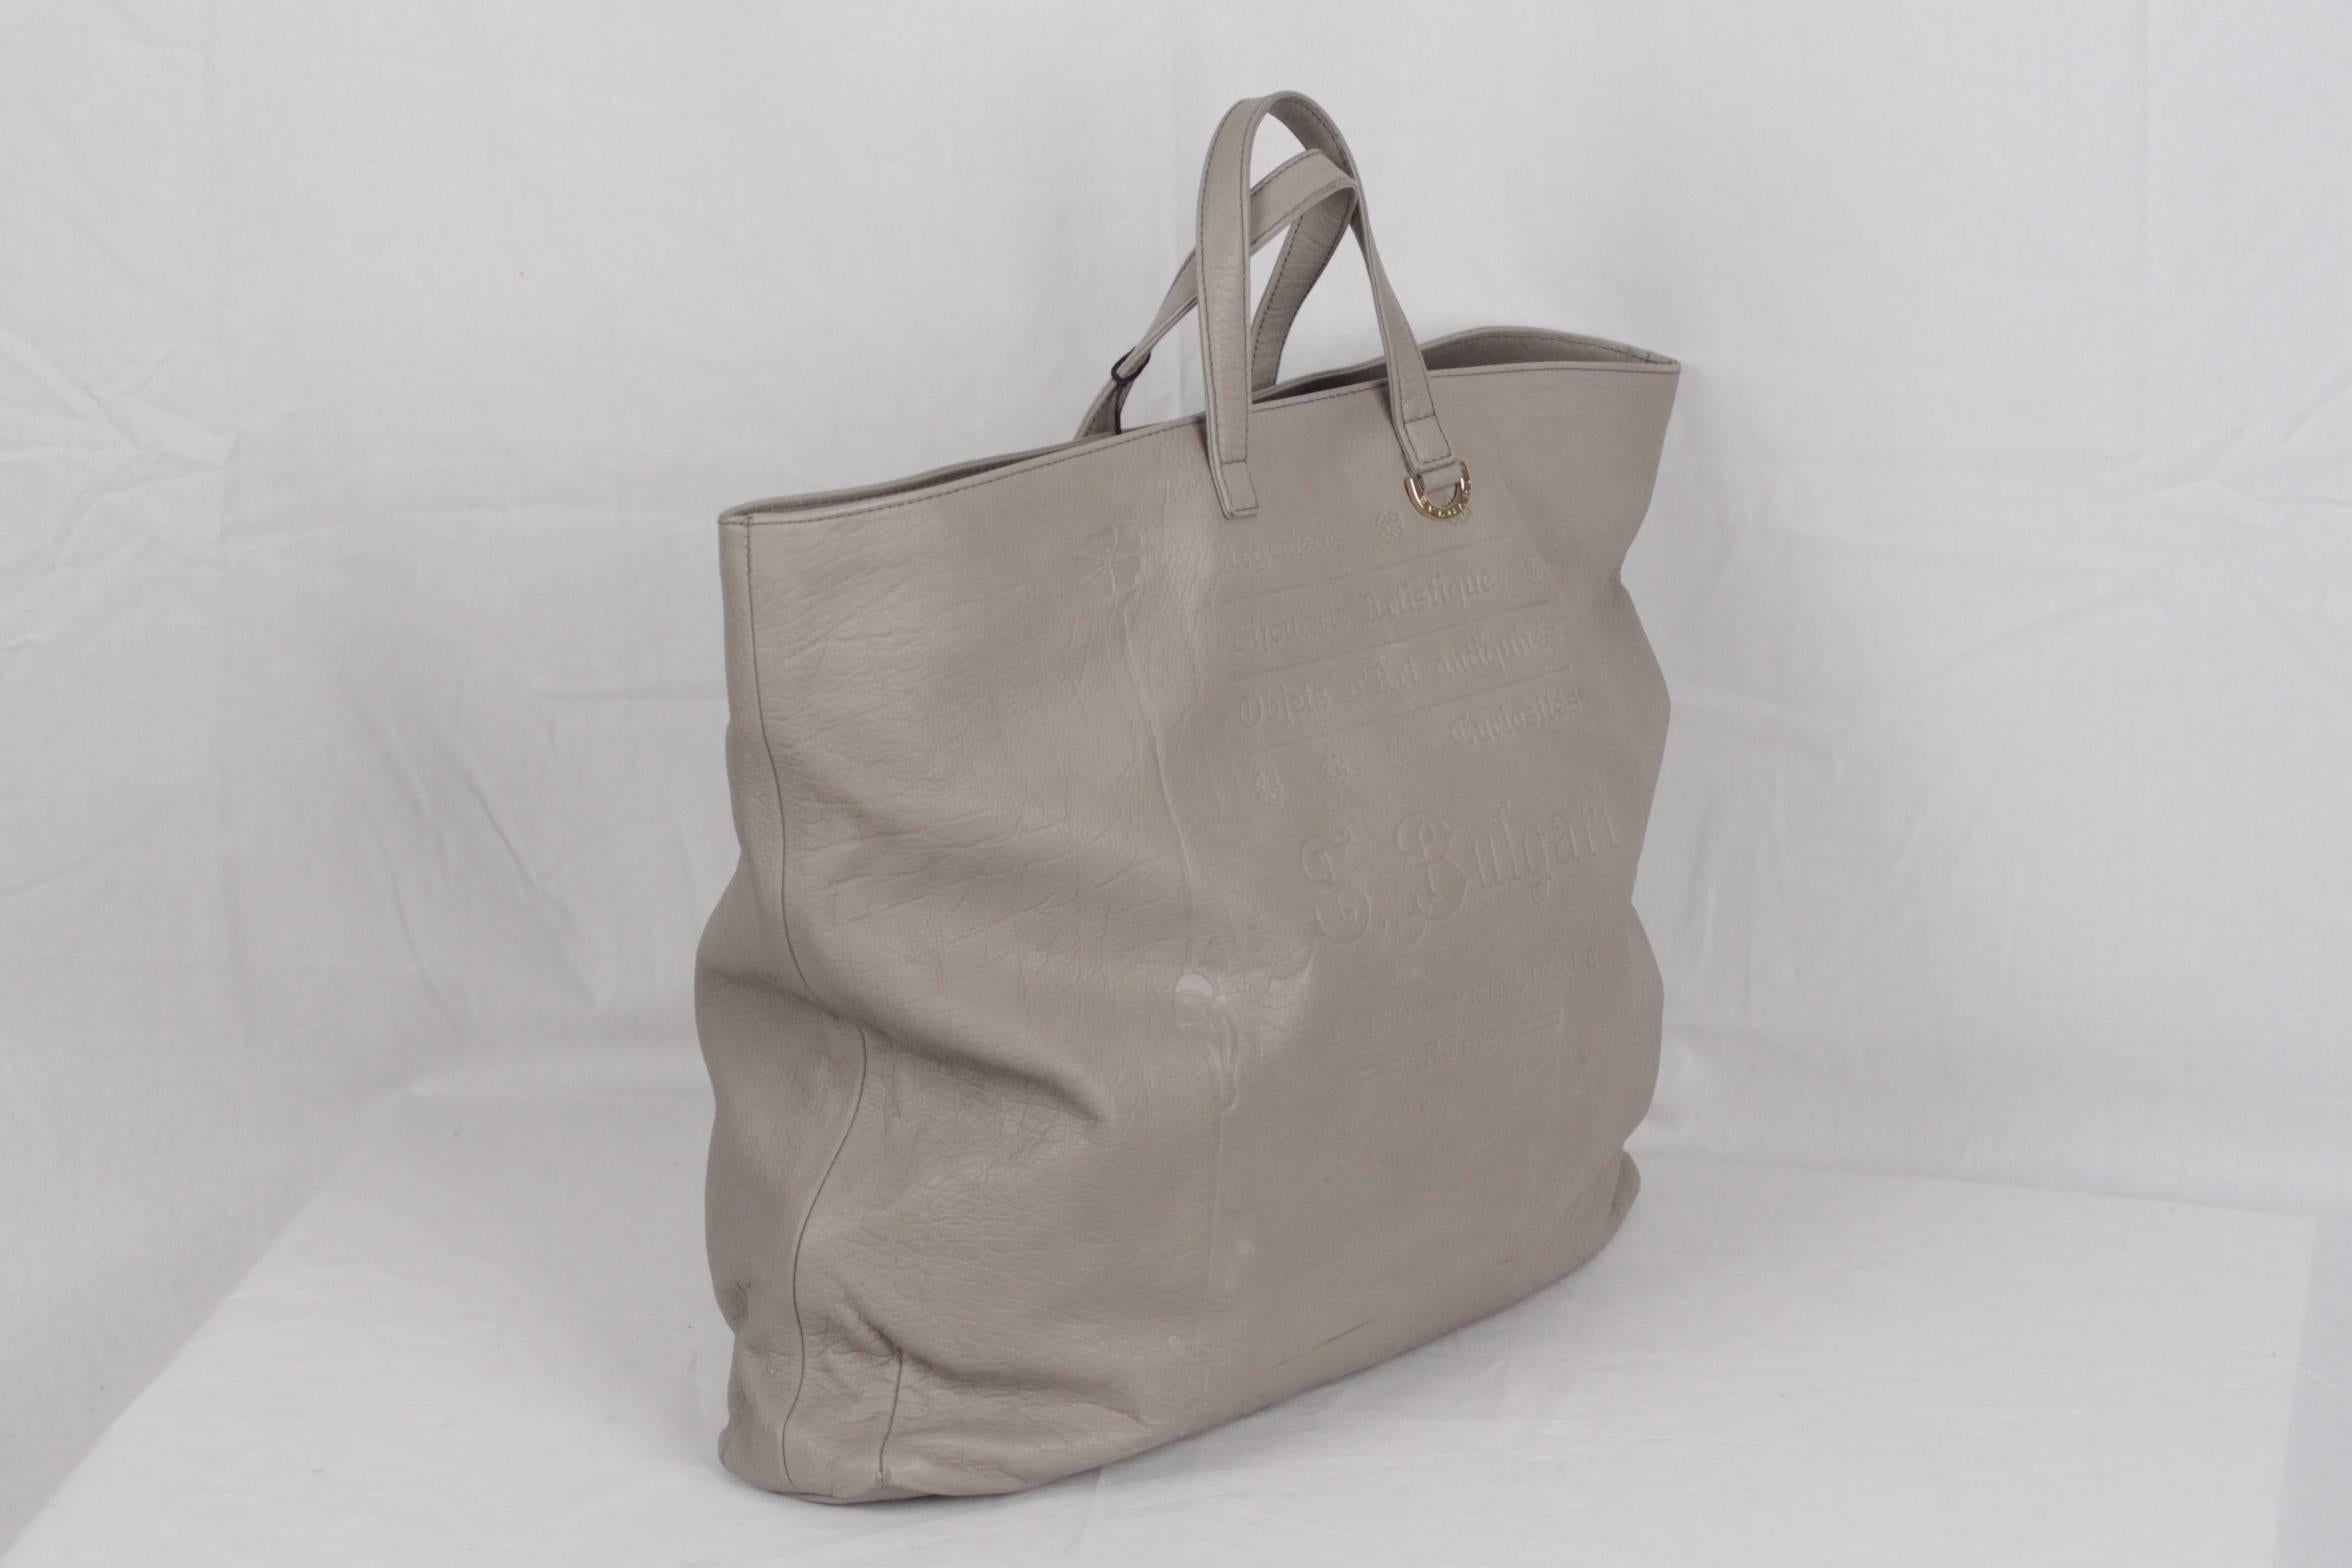 gray leather tote handbag